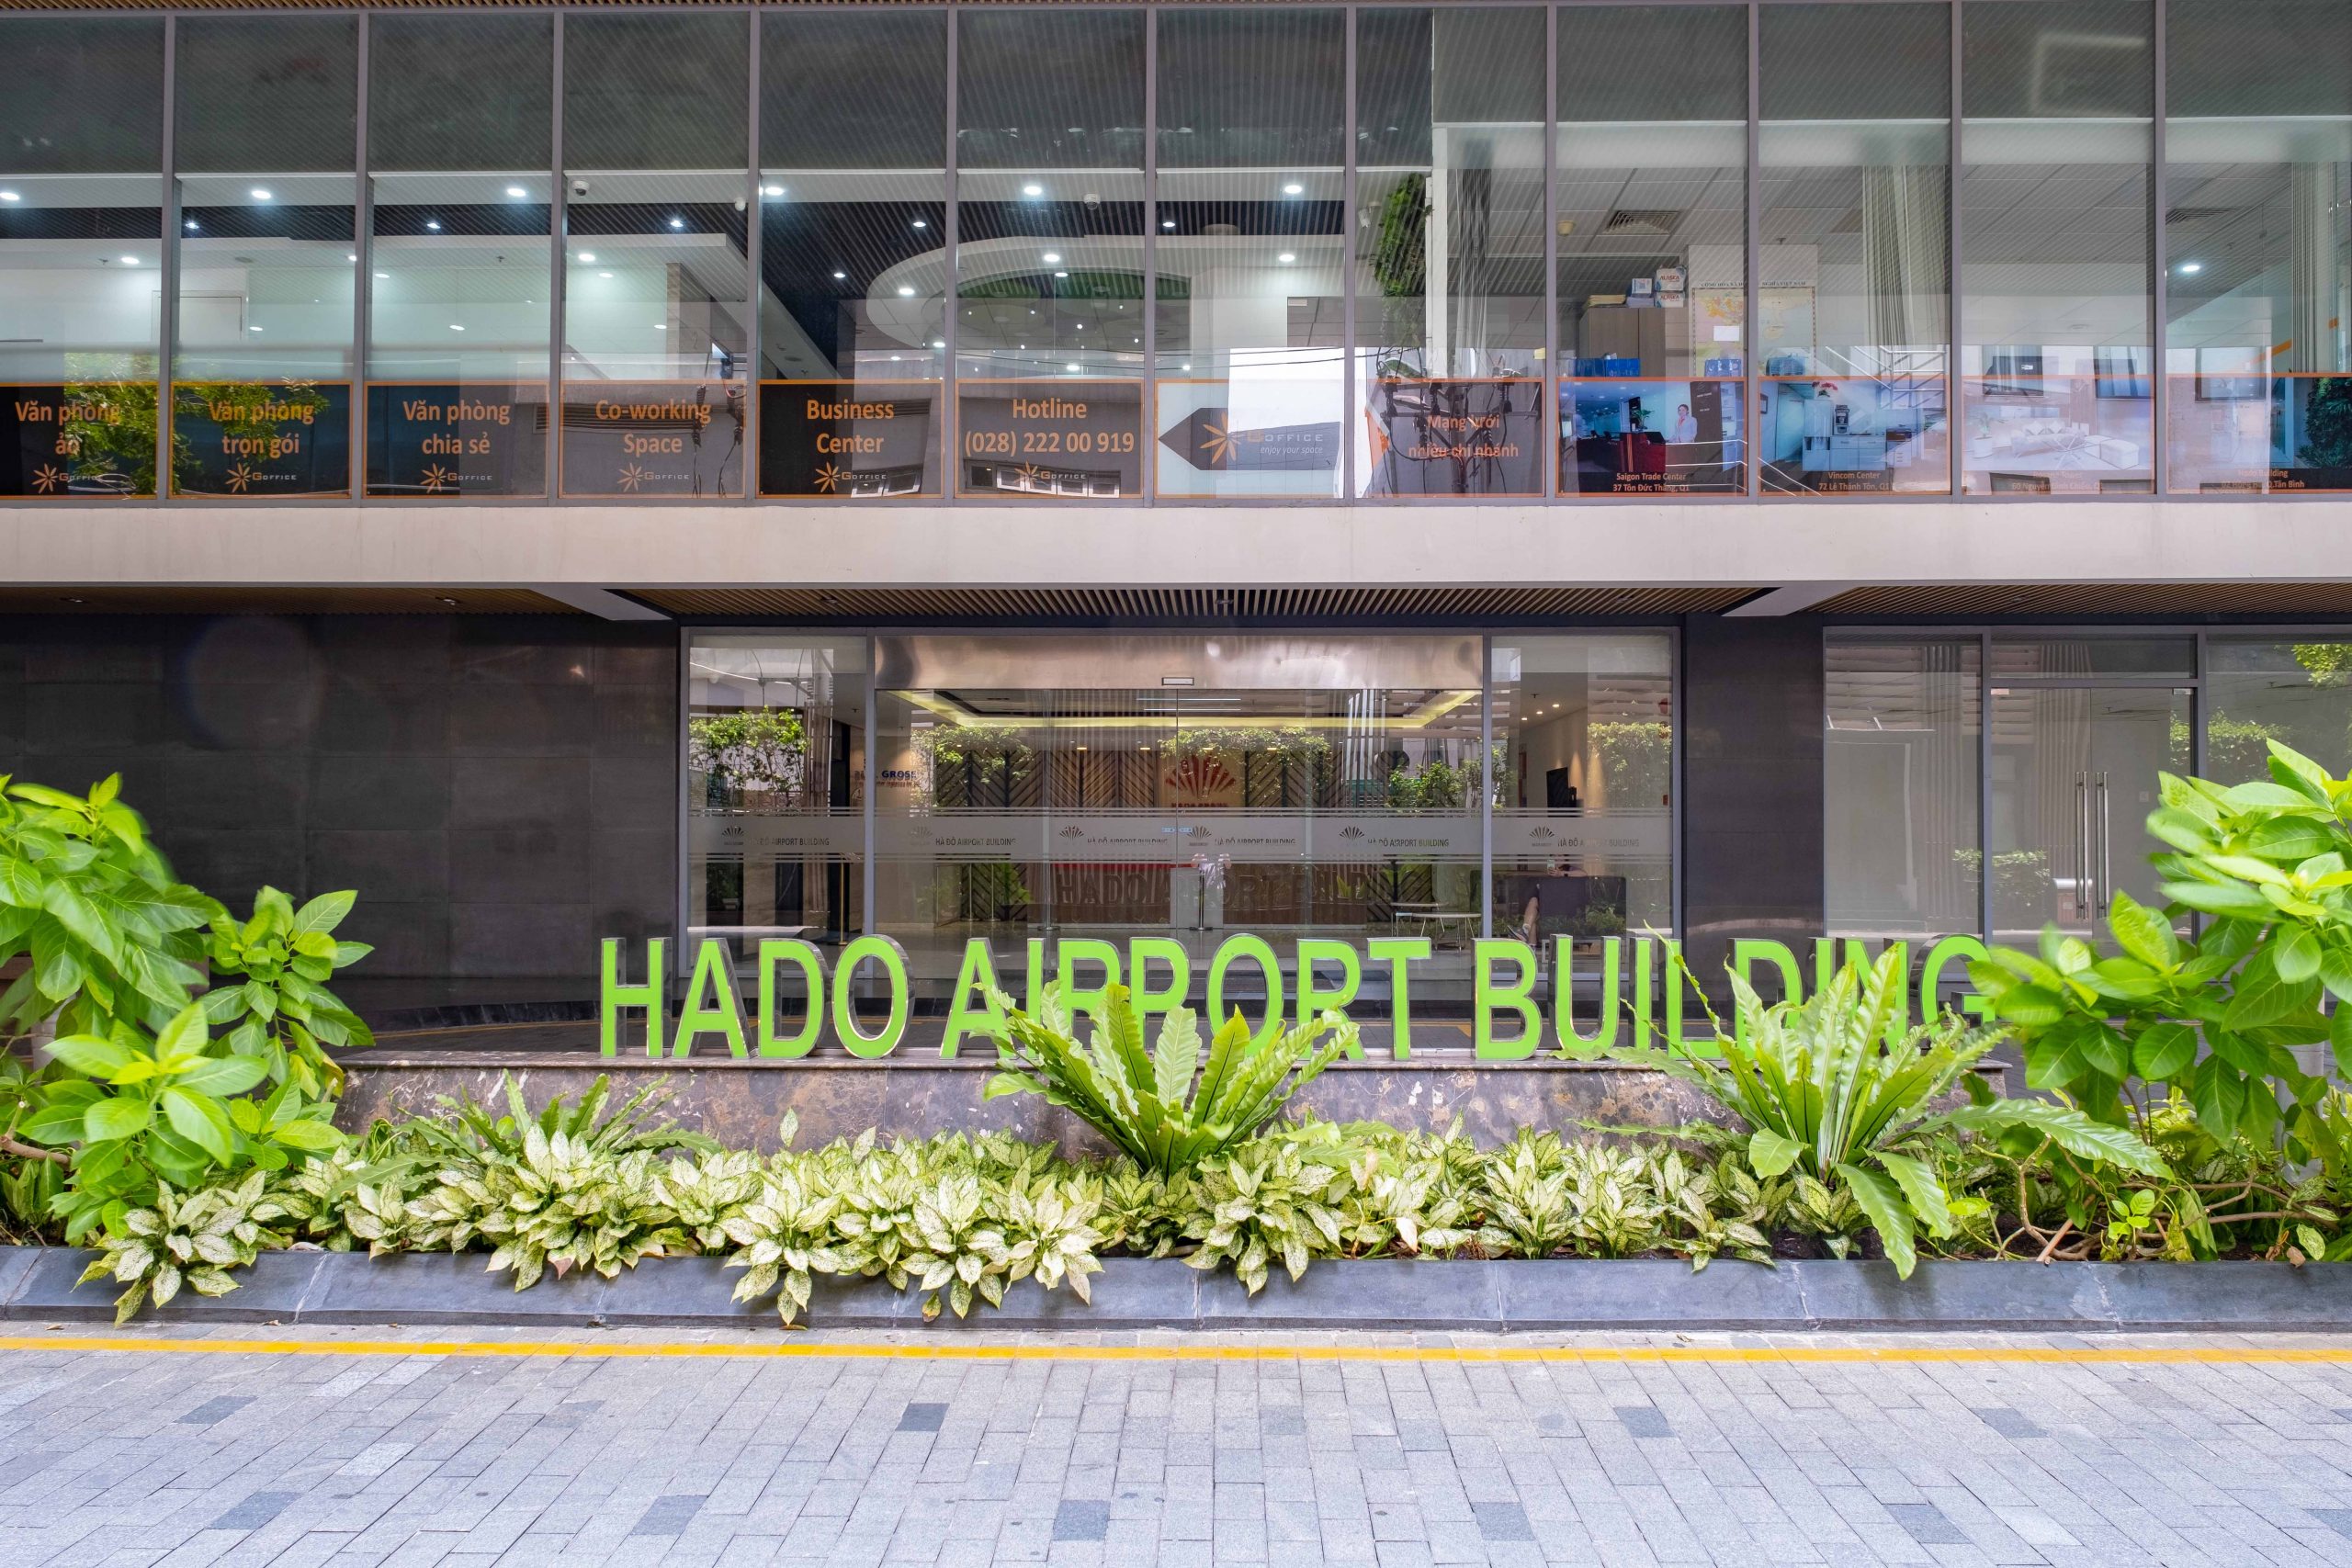 Hà Đô Airport building